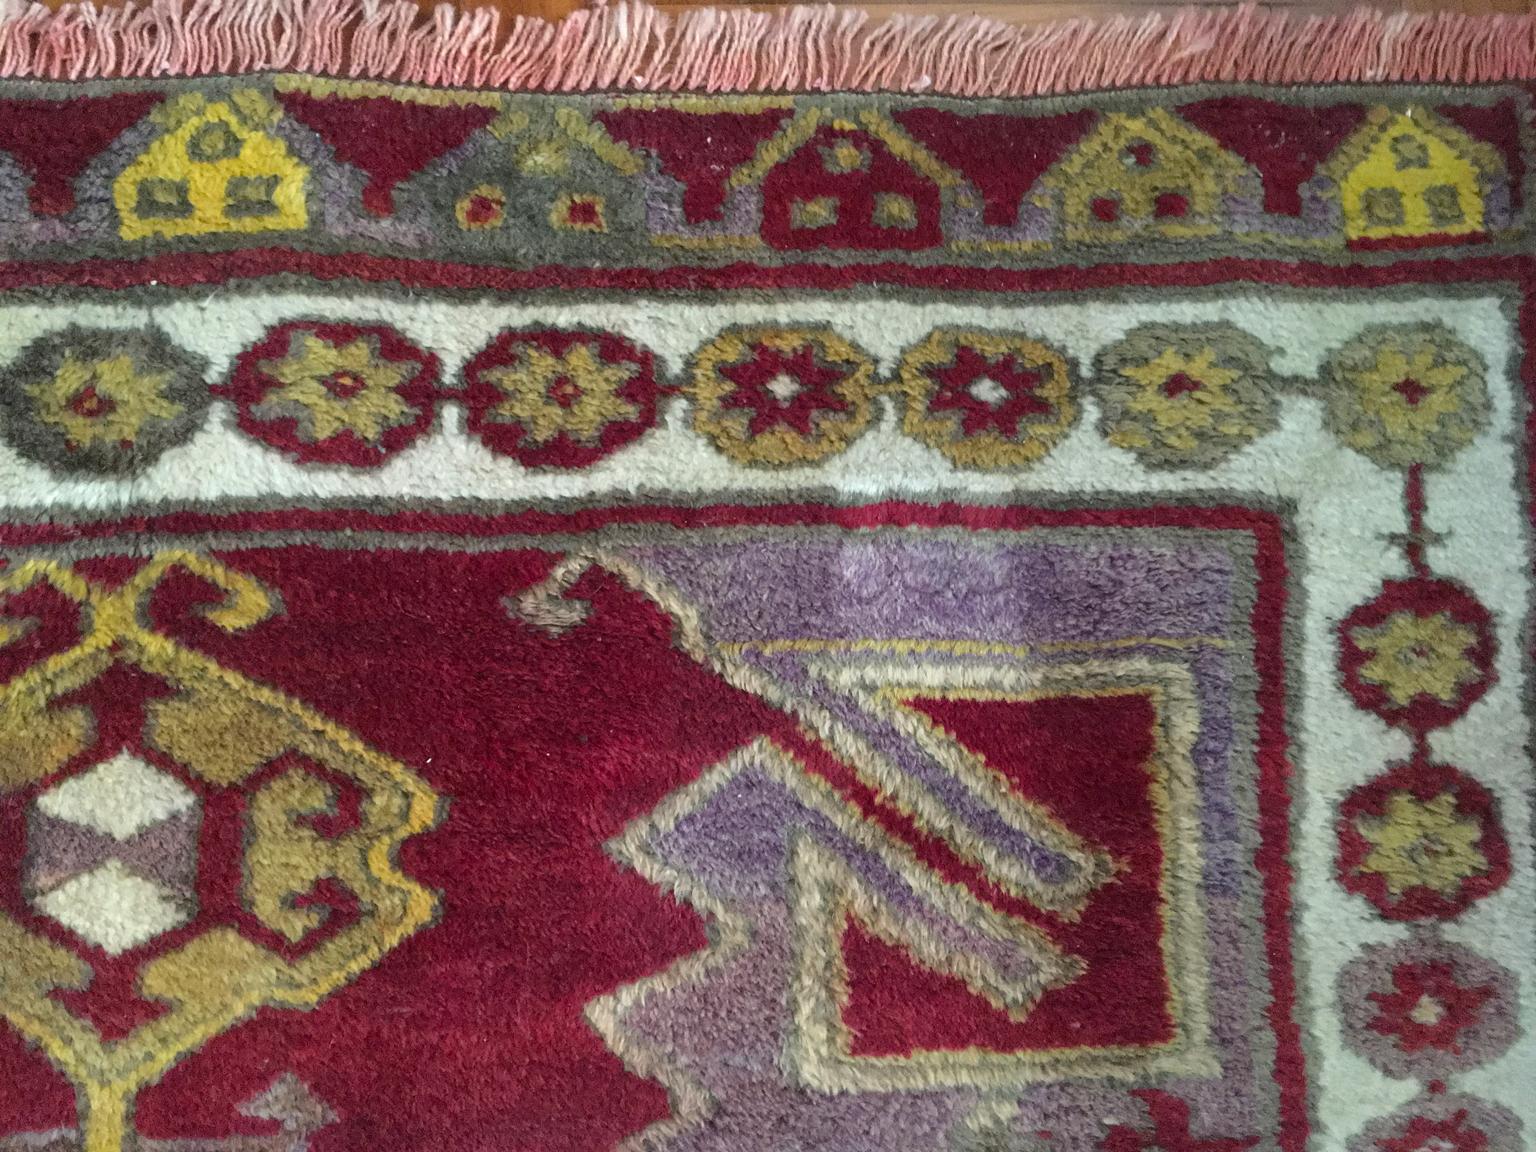 Il s'agit d'un tapis en laine fabriqué à la main dans les pays du Caucase. Les dessins géométriques  et les couleurs entièrement utilisées en font une pièce très étonnante à placer dans toutes les pièces de votre maison.  Le savoir-faire artisanal